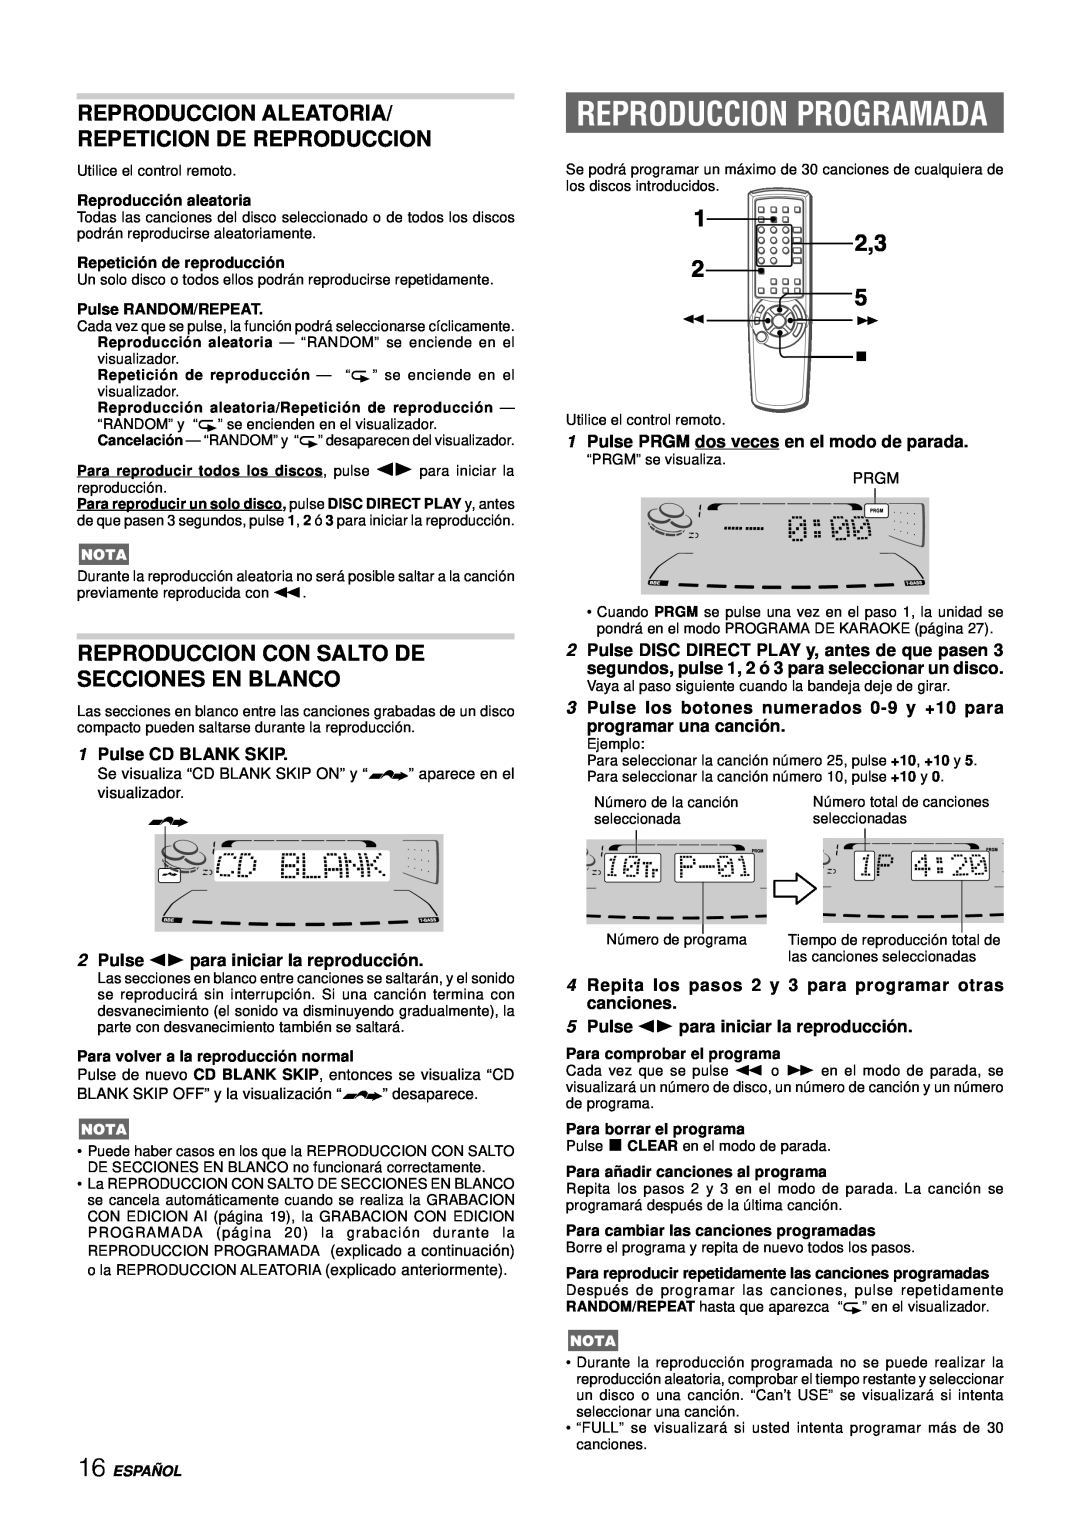 Aiwa NSX-DS8 manual Reproduccion Programada, Reproduccion Con Salto De Secciones En Blanco, 1Pulse CD BLANK SKIP, Españ Ol 